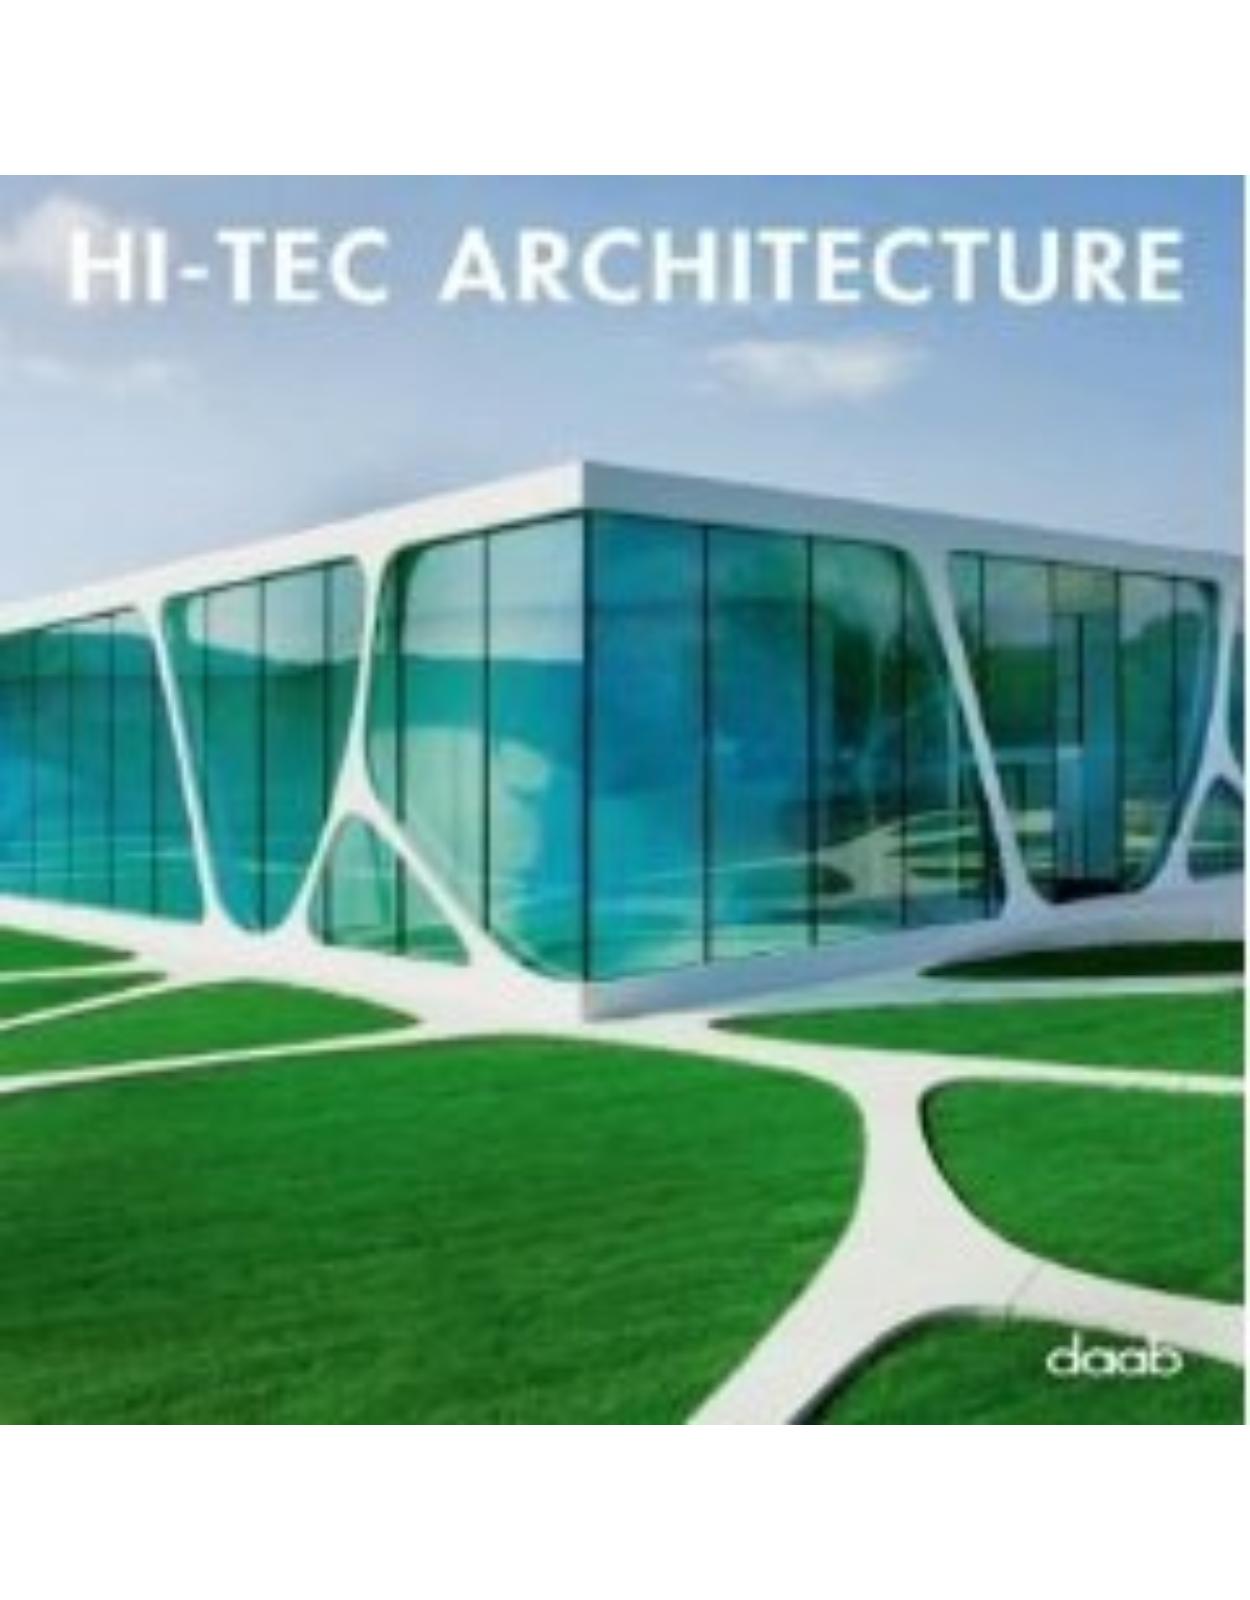 Hi-tec Architecture